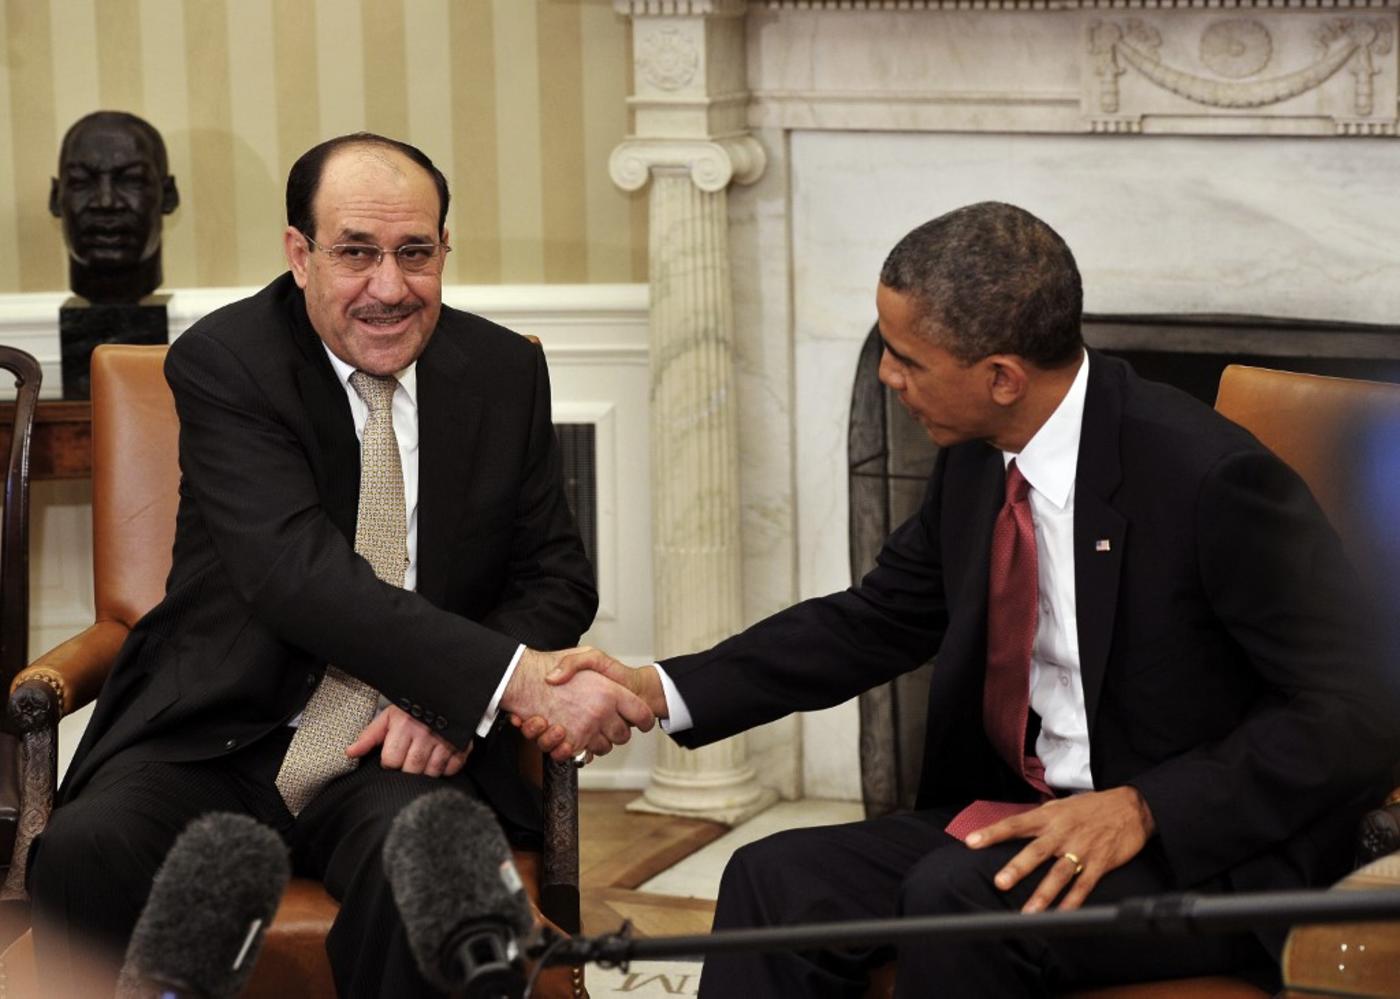 Nouri al-Maliki and Barack Obama